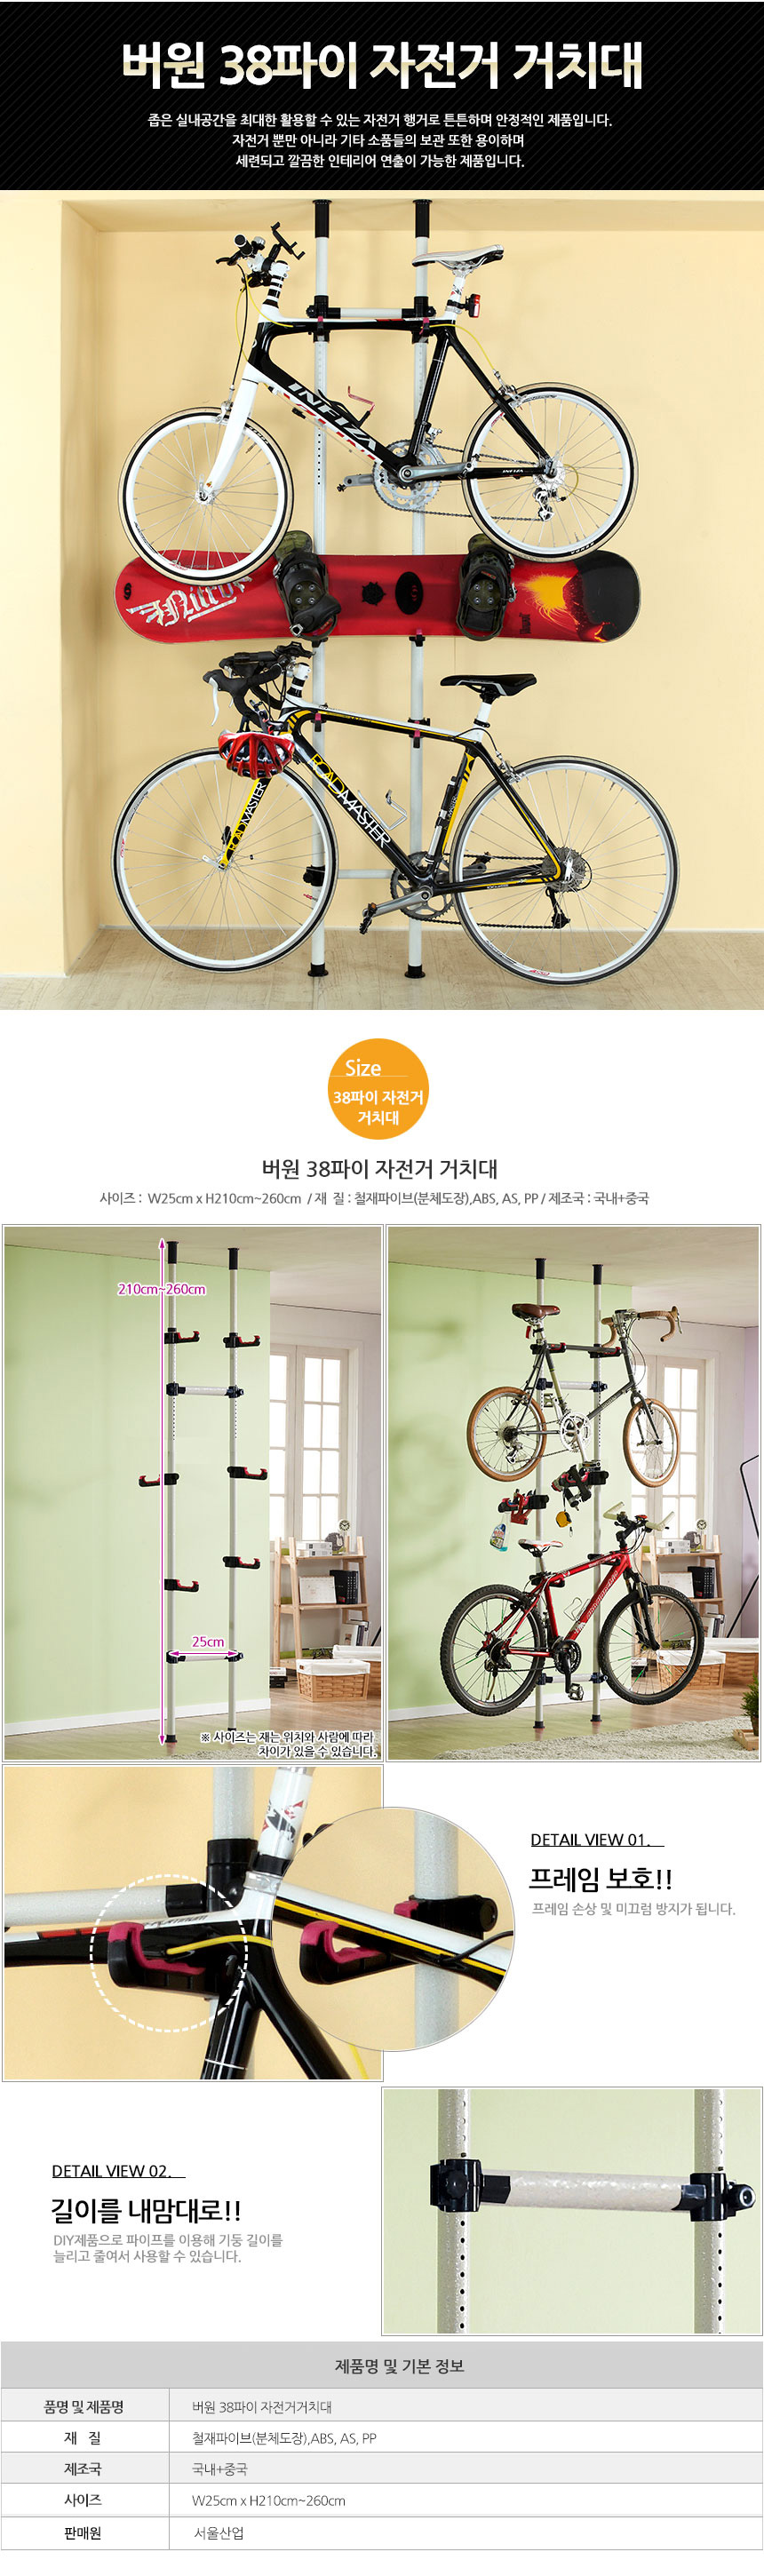 bicycle_rack.jpg